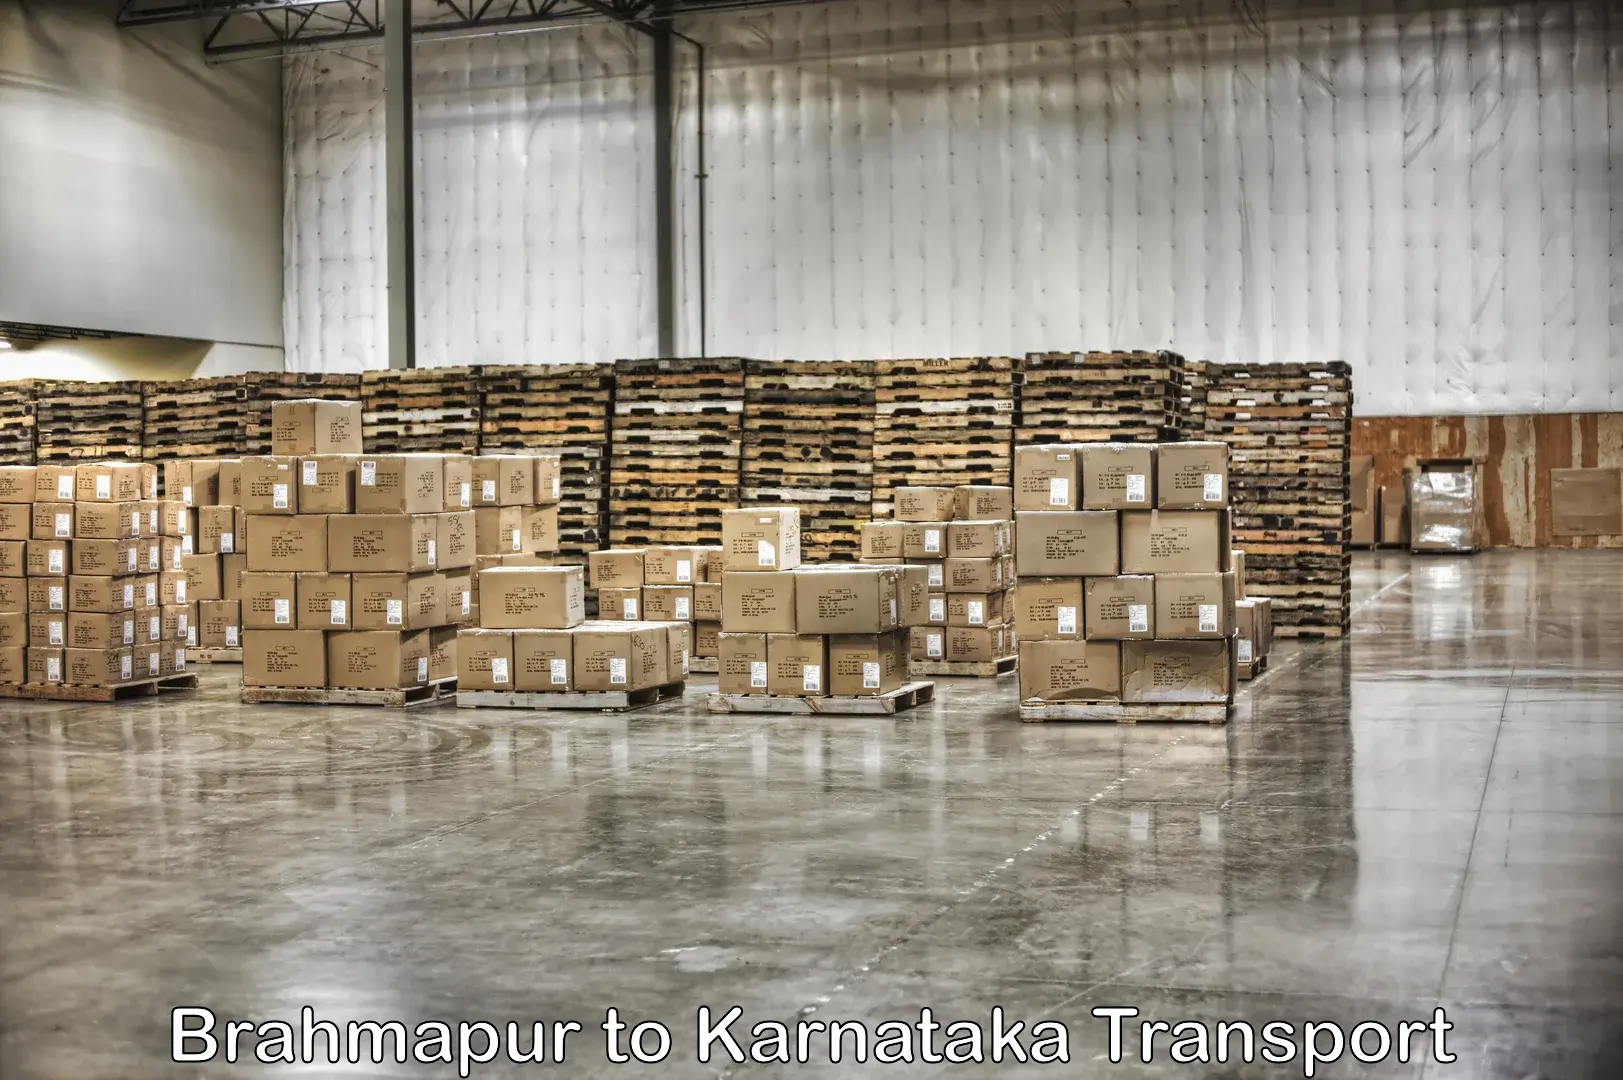 Road transport online services Brahmapur to Kanjarakatte